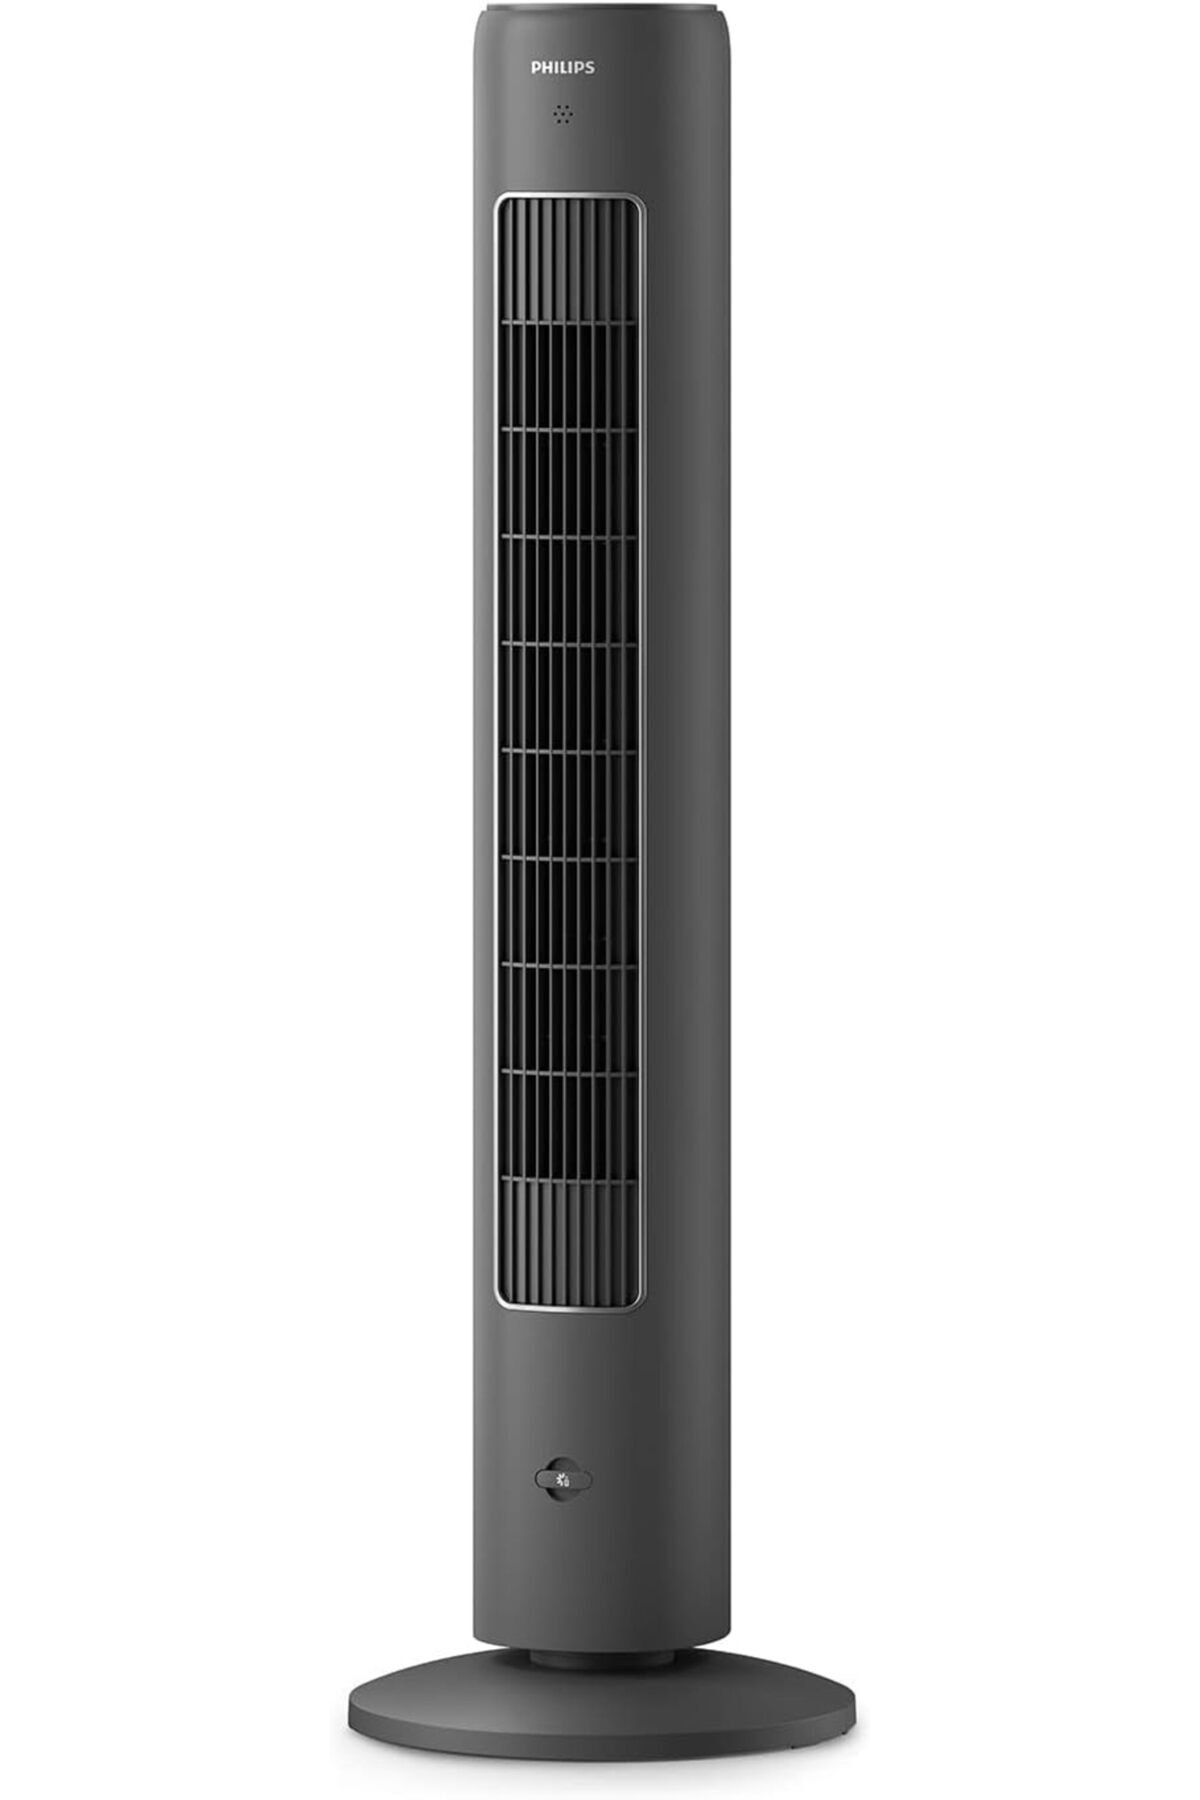 Philips fan kulesi, 5000 Serisi, otomatik döndürme, 105 cm, uzaktan kumanda, zamanlayıcı